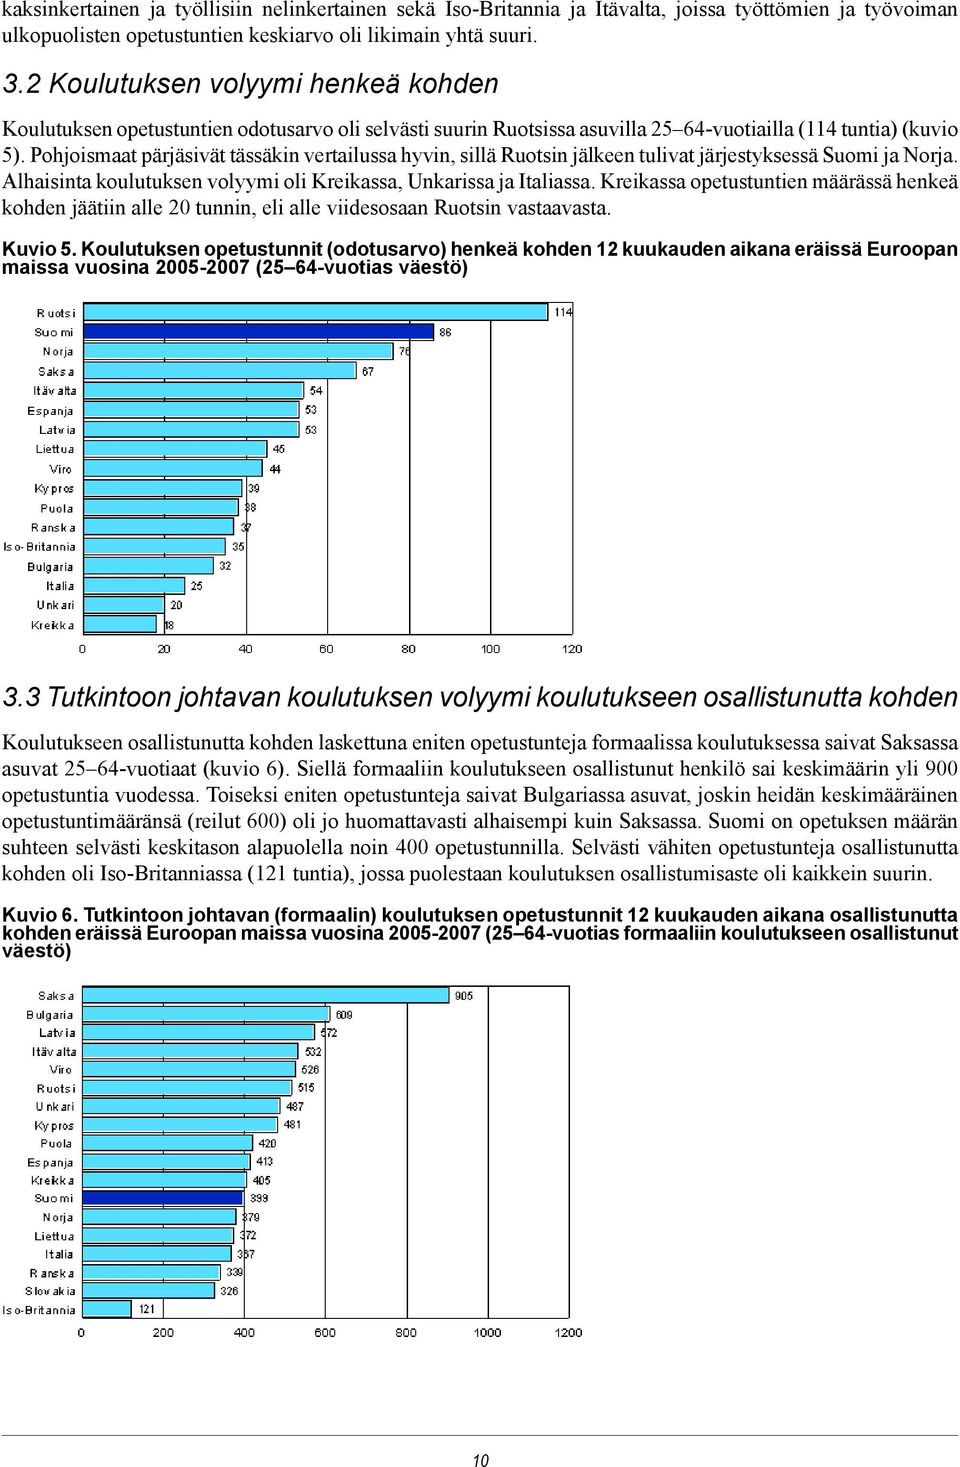 Pohjoismaat pärjäsivät tässäkin vertailussa hyvin, sillä Ruotsin jälkeen tulivat järjestyksessä Suomi ja Norja. Alhaisinta koulutuksen volyymi oli Kreikassa, Unkarissa ja Italiassa.